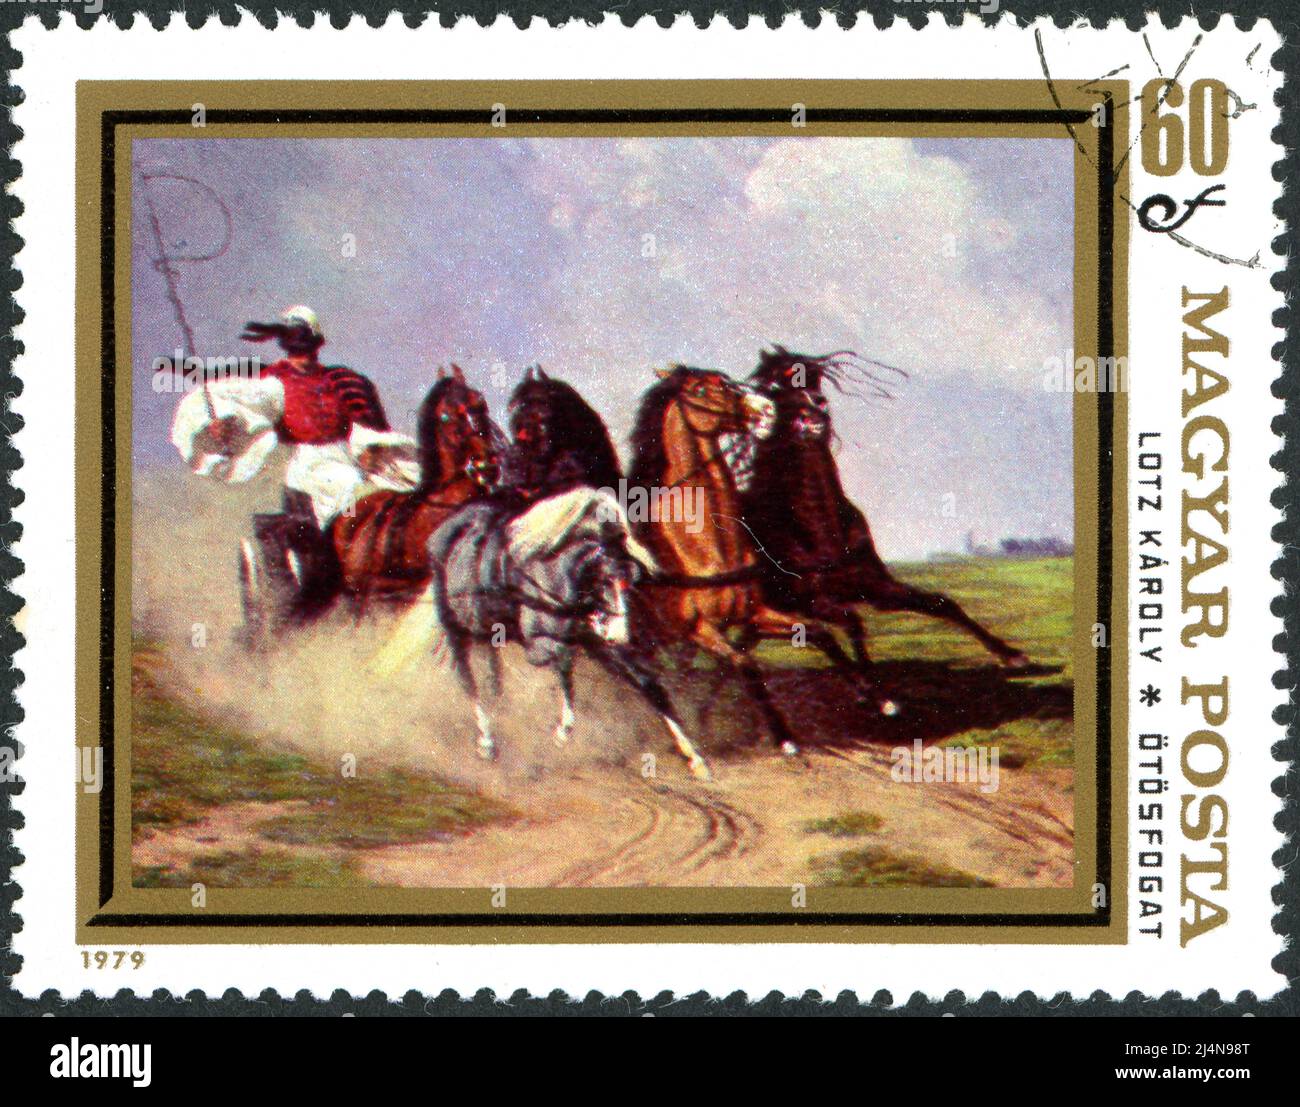 UNGARN - UM 1979: In Ungarn gedruckte Briefmarke, zeigt das Gemälde 'Coach and Five' eines deutsch-ungarischen Malers Karoly Lotz, um 1979 Stockfoto